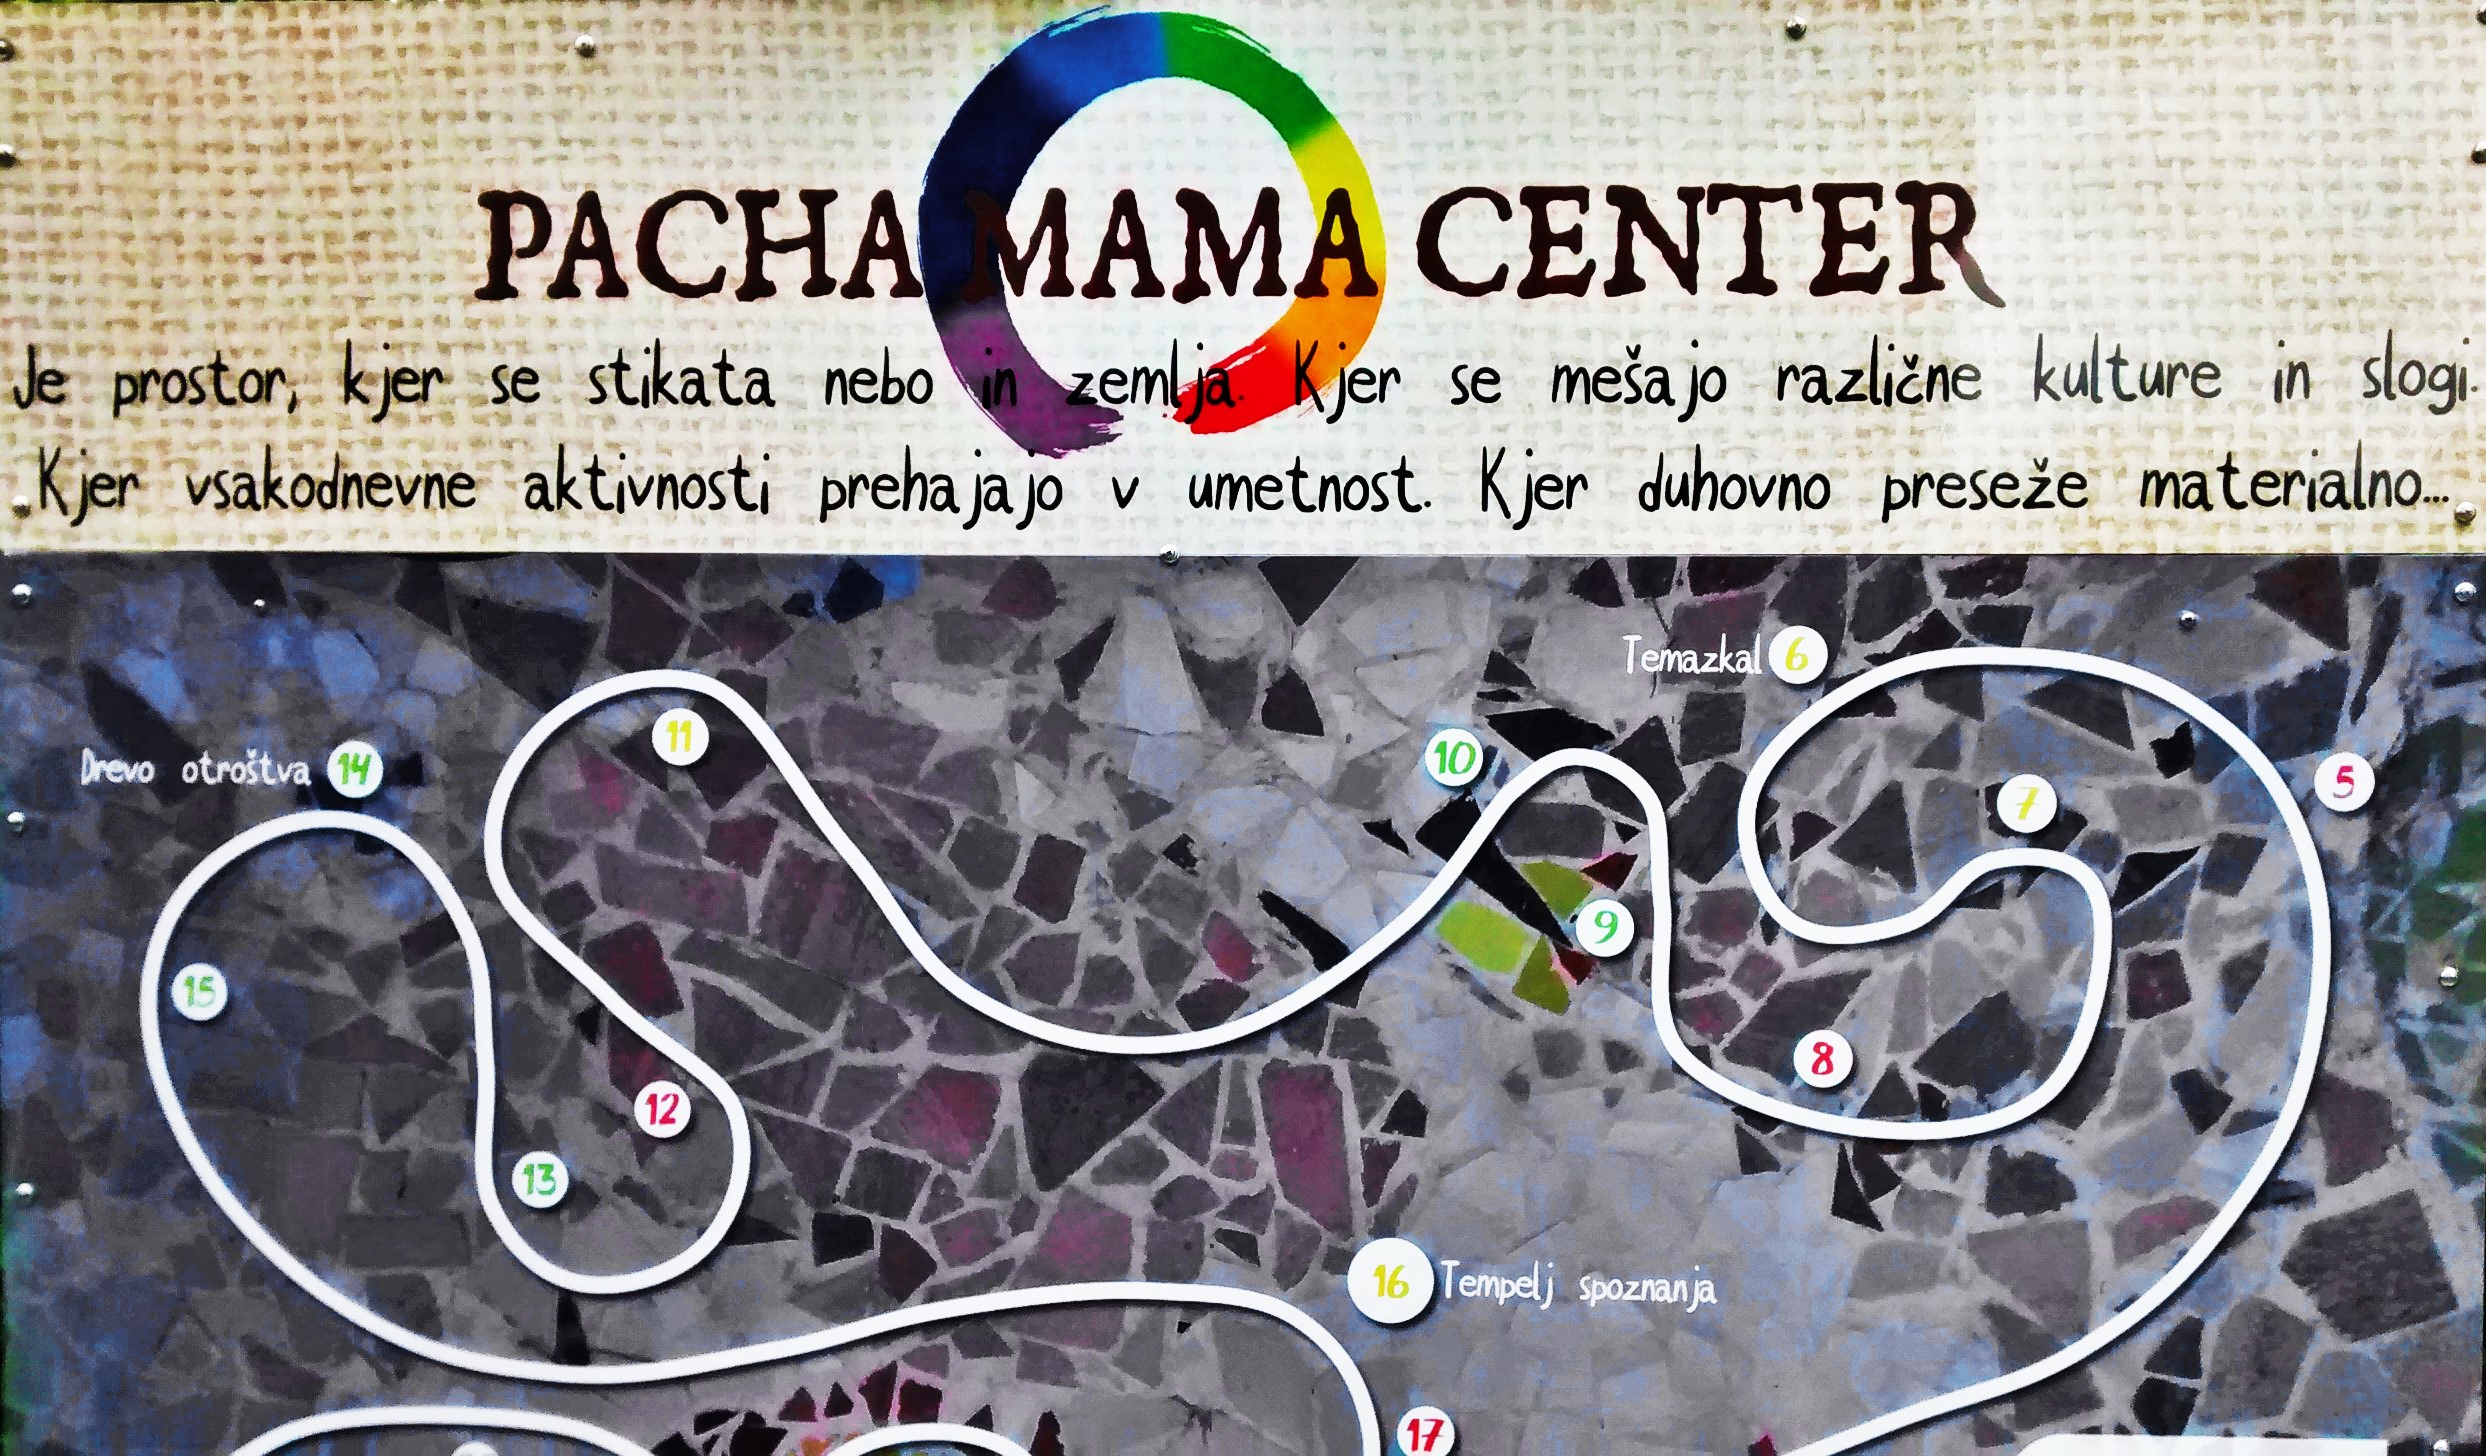 La comunità Pachamama in Slovenia